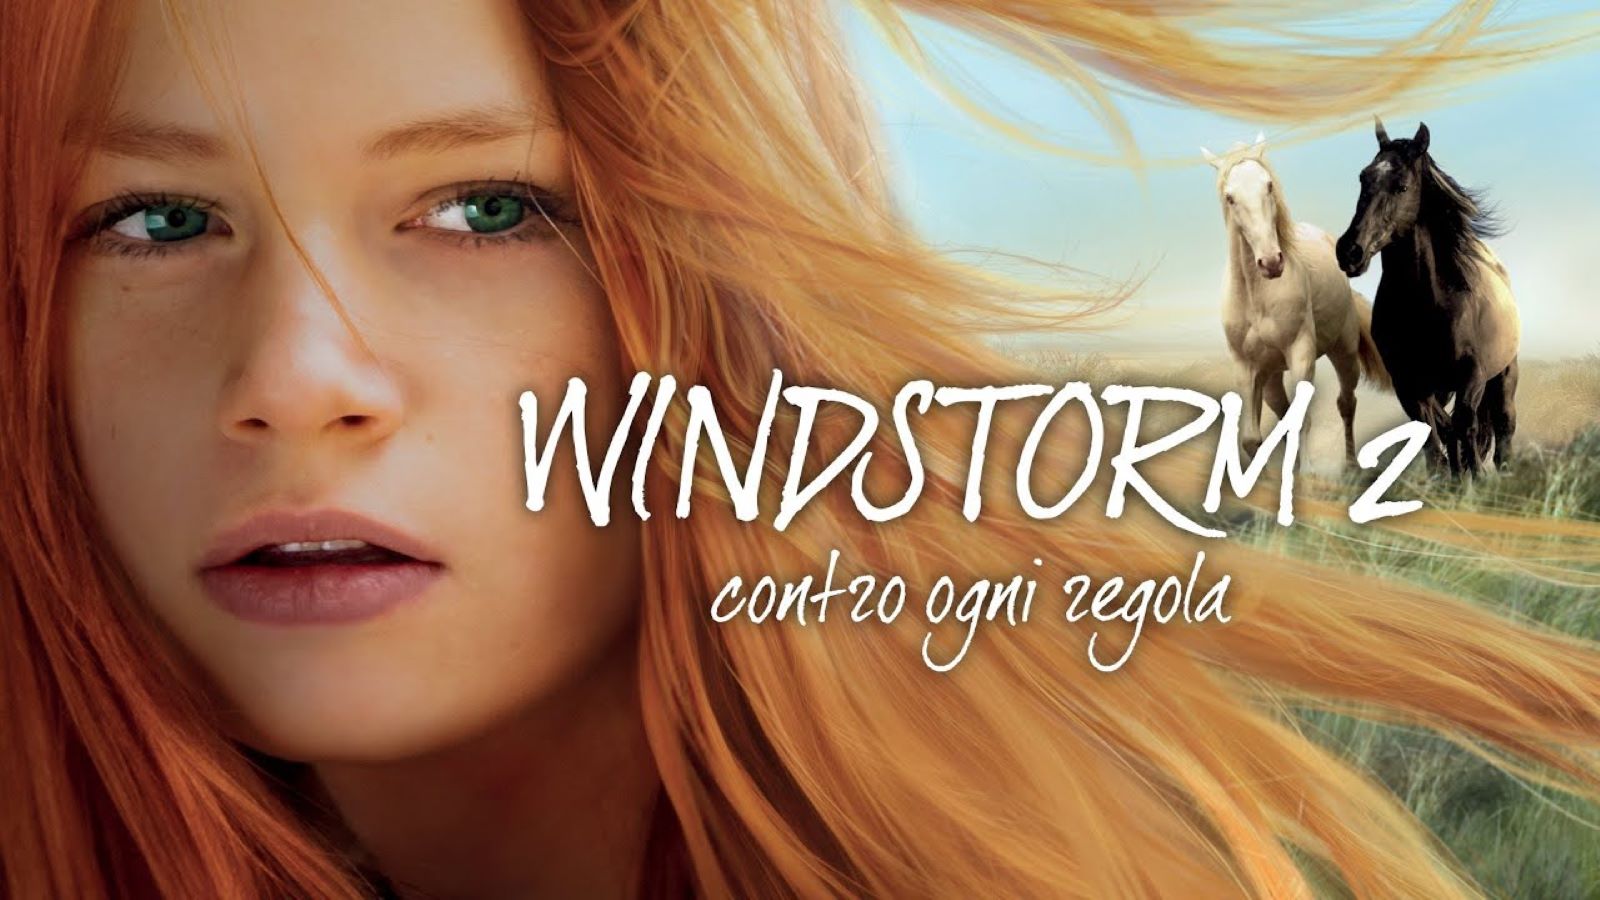 Windstorm 2 - Contro ogni regola stasera su Italia 1: trama e cast del secondo capitolo della saga